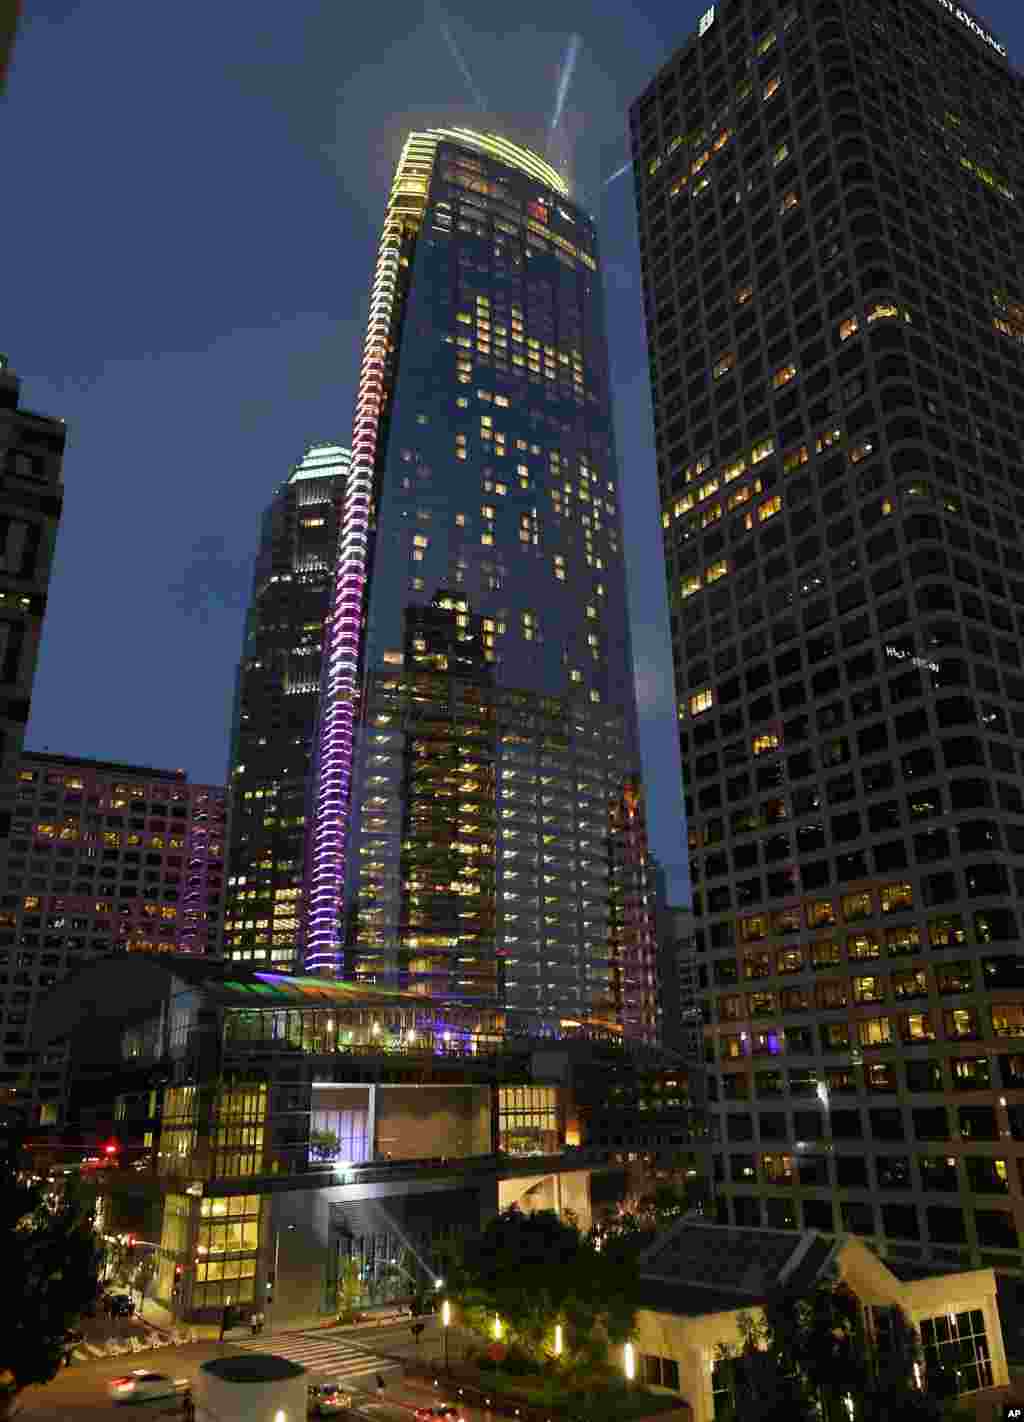 نمایش نور در جشن افتتاح&nbsp; برج ویلشایر بلندترین برج در غرب آمریکا